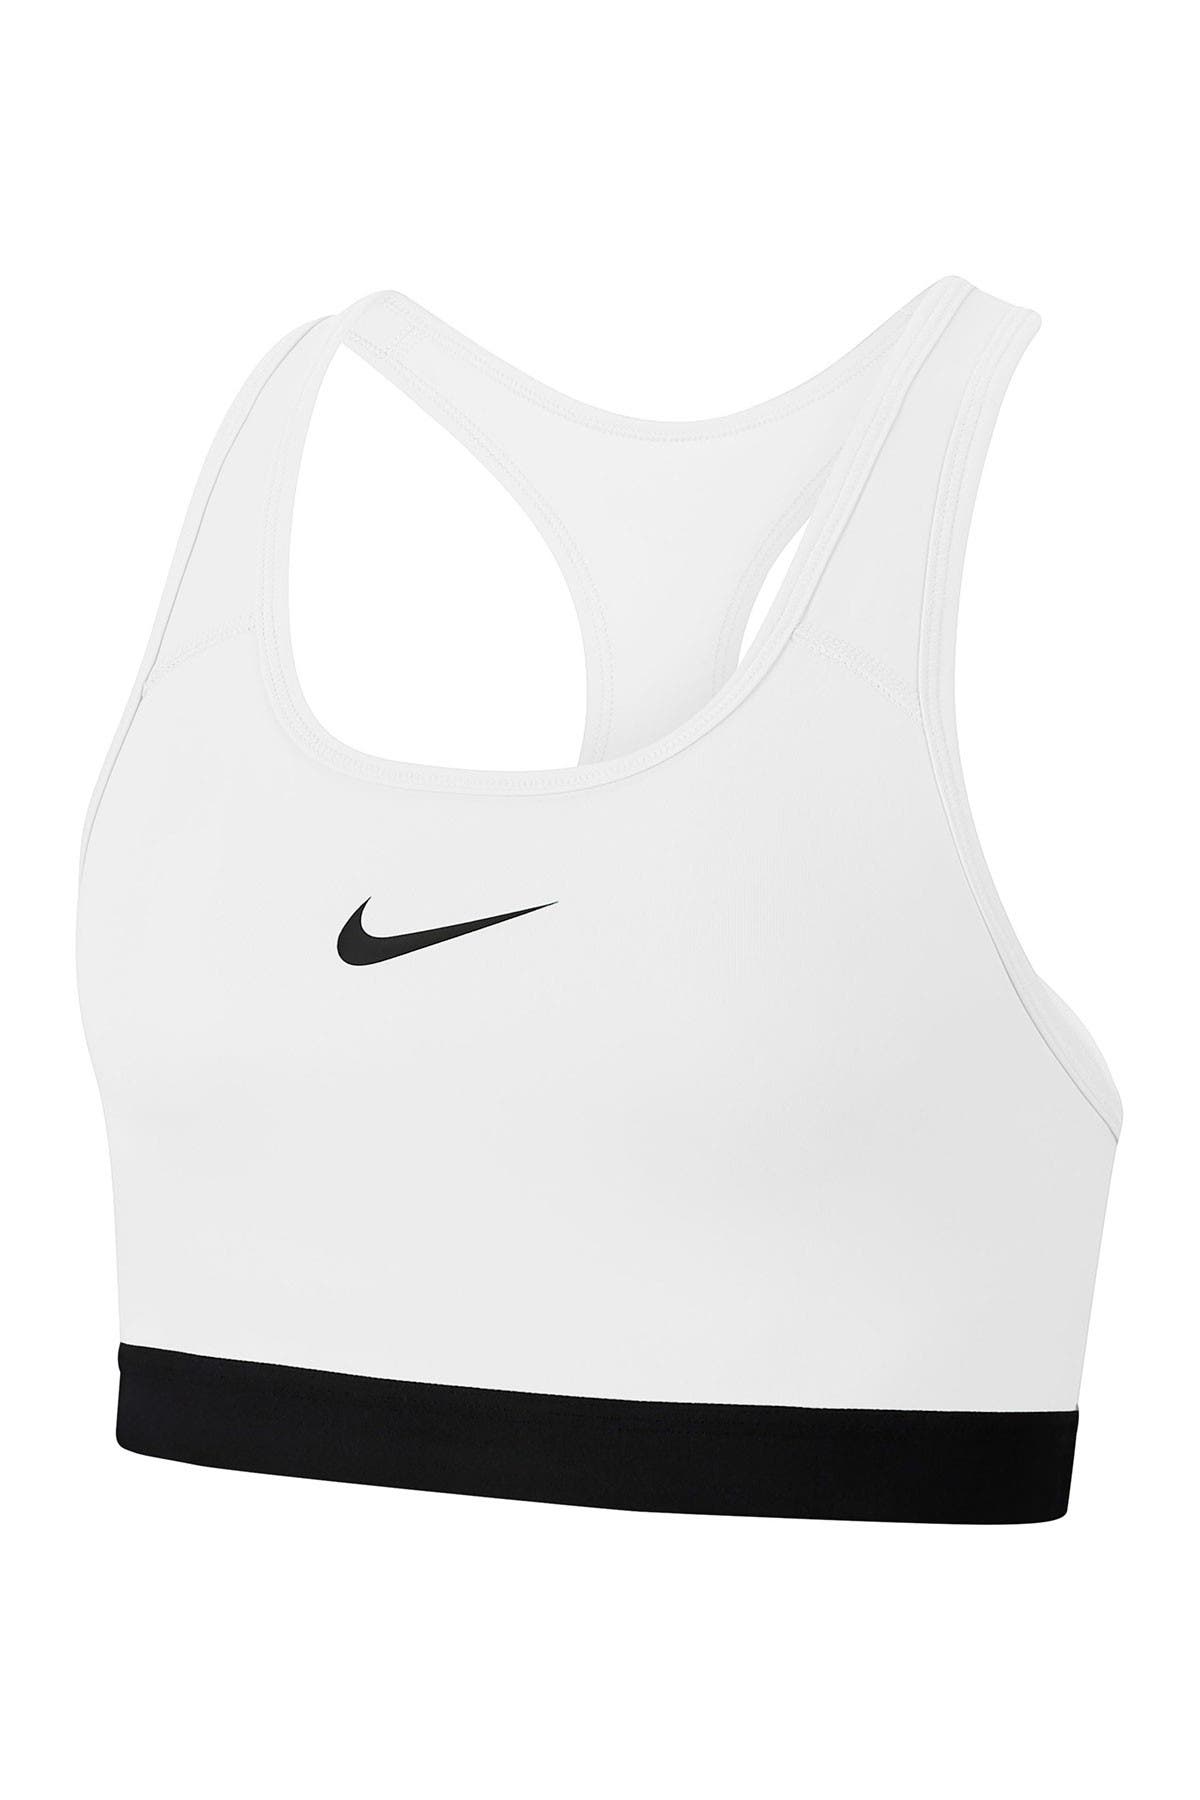 Nike Swoosh Logo Racerback Sports Bra In White/black